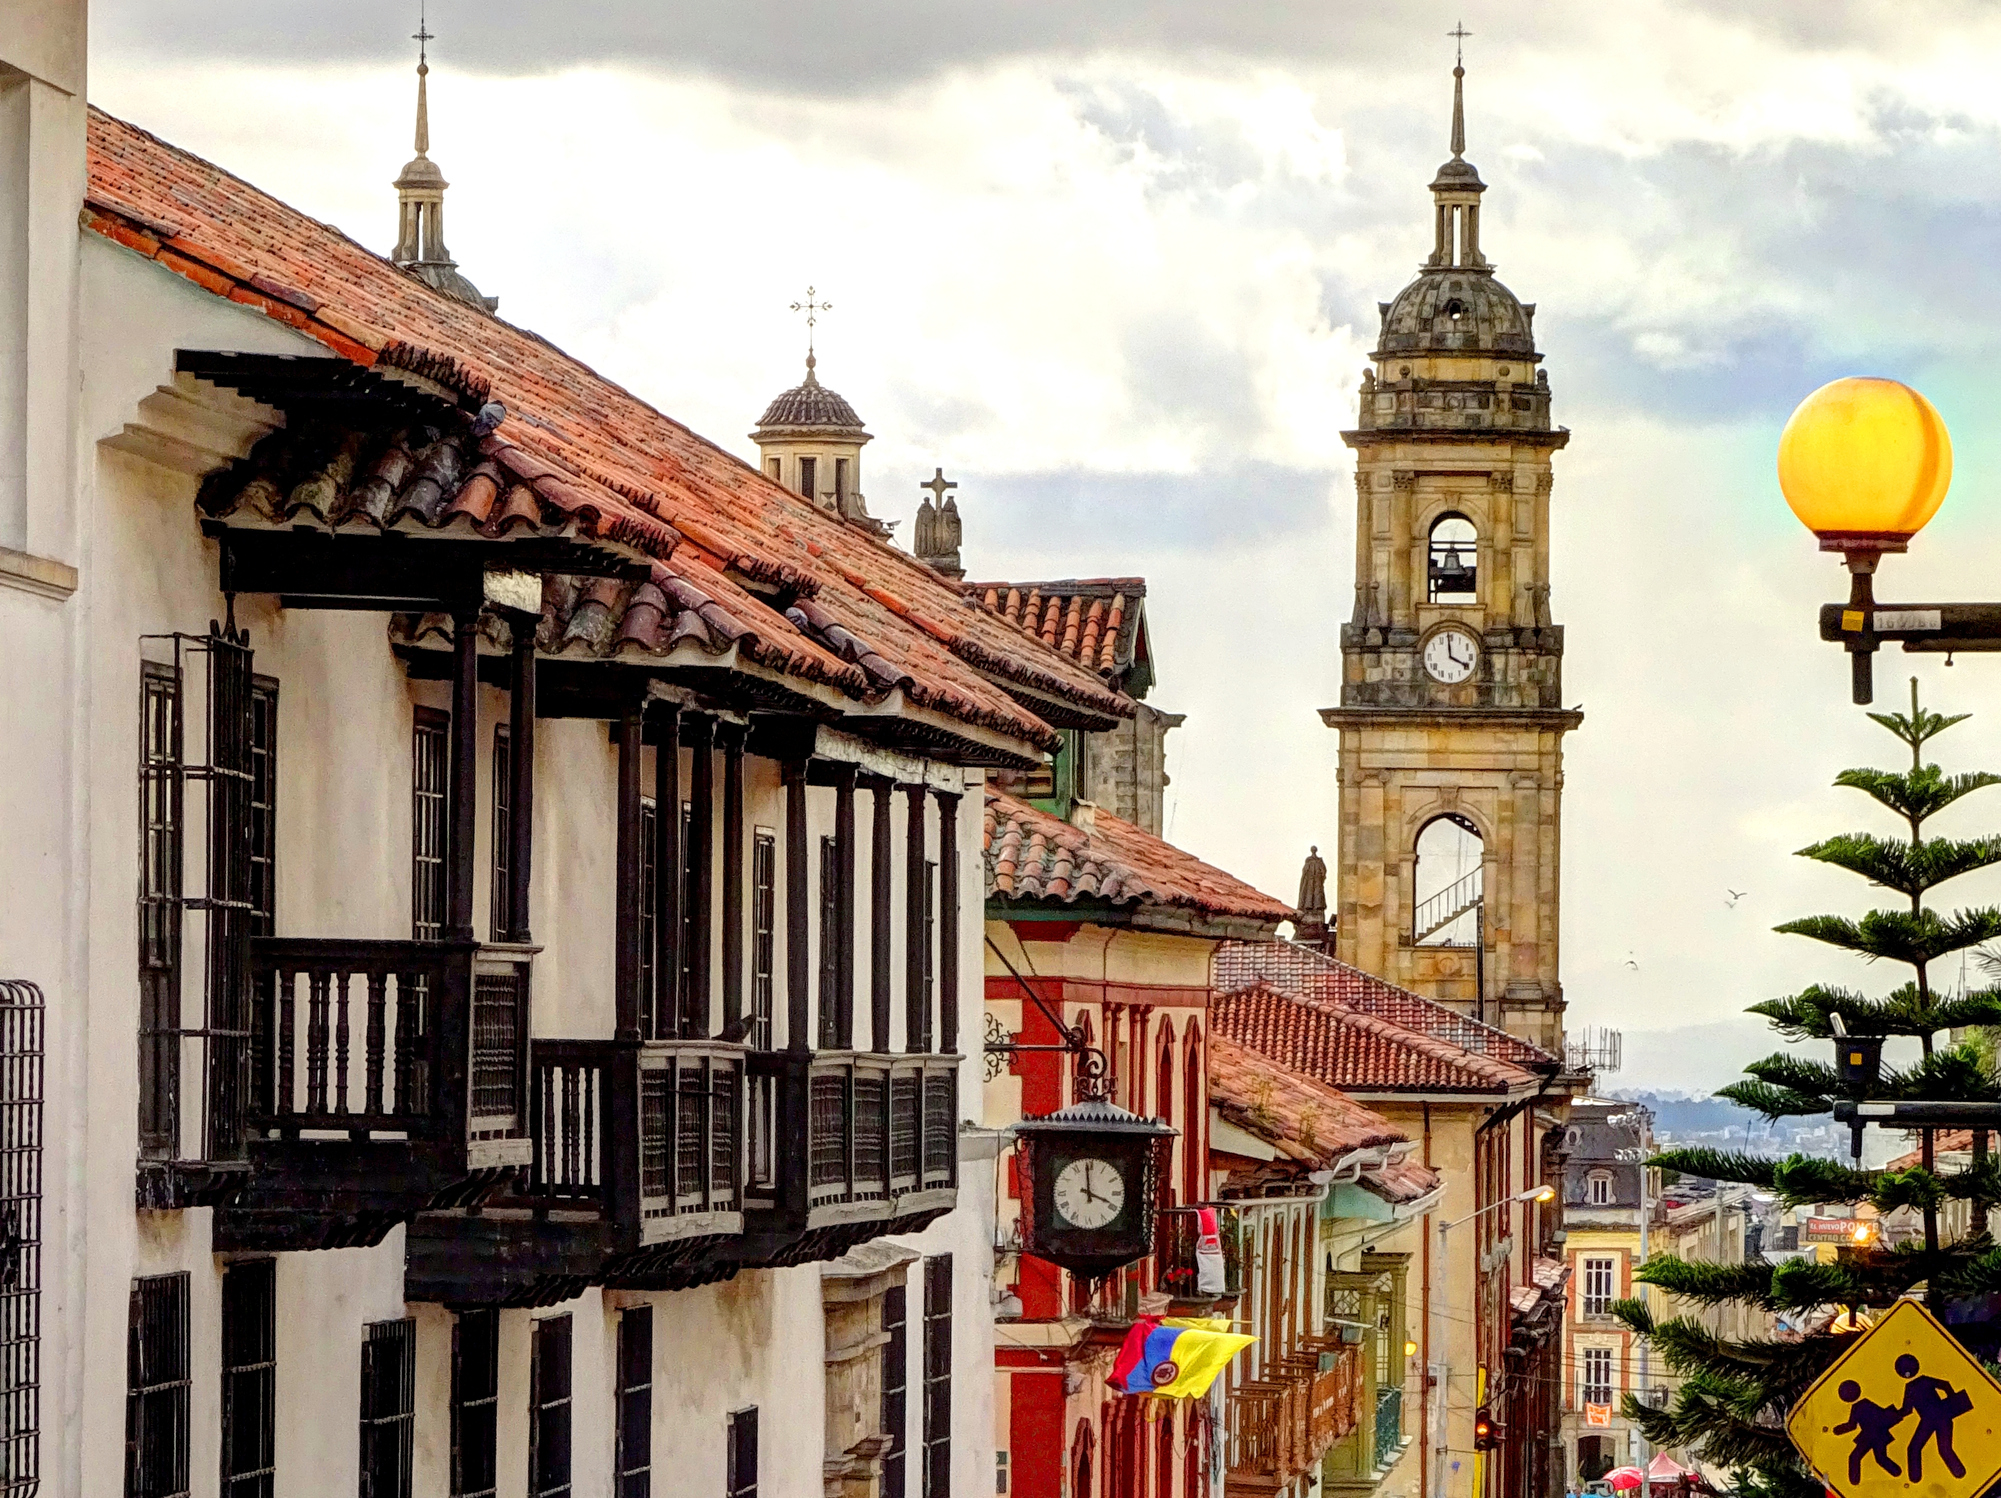 Столицата на Колумбия Богота е красив и екзотичен град, непрекъснато разкъсван от множество граждански войни и кръвопролития. В резултат на неспиращите с години войни, близо една трета от населението живее под прага на бедността. За търсещите вълнуващи преживявания туристи, Богота има какво да предложи. Сред задължителните за посещения места със сигурност са хълмът Монсерат, площадът "Боливар", Националният музей, Златният музей и др.